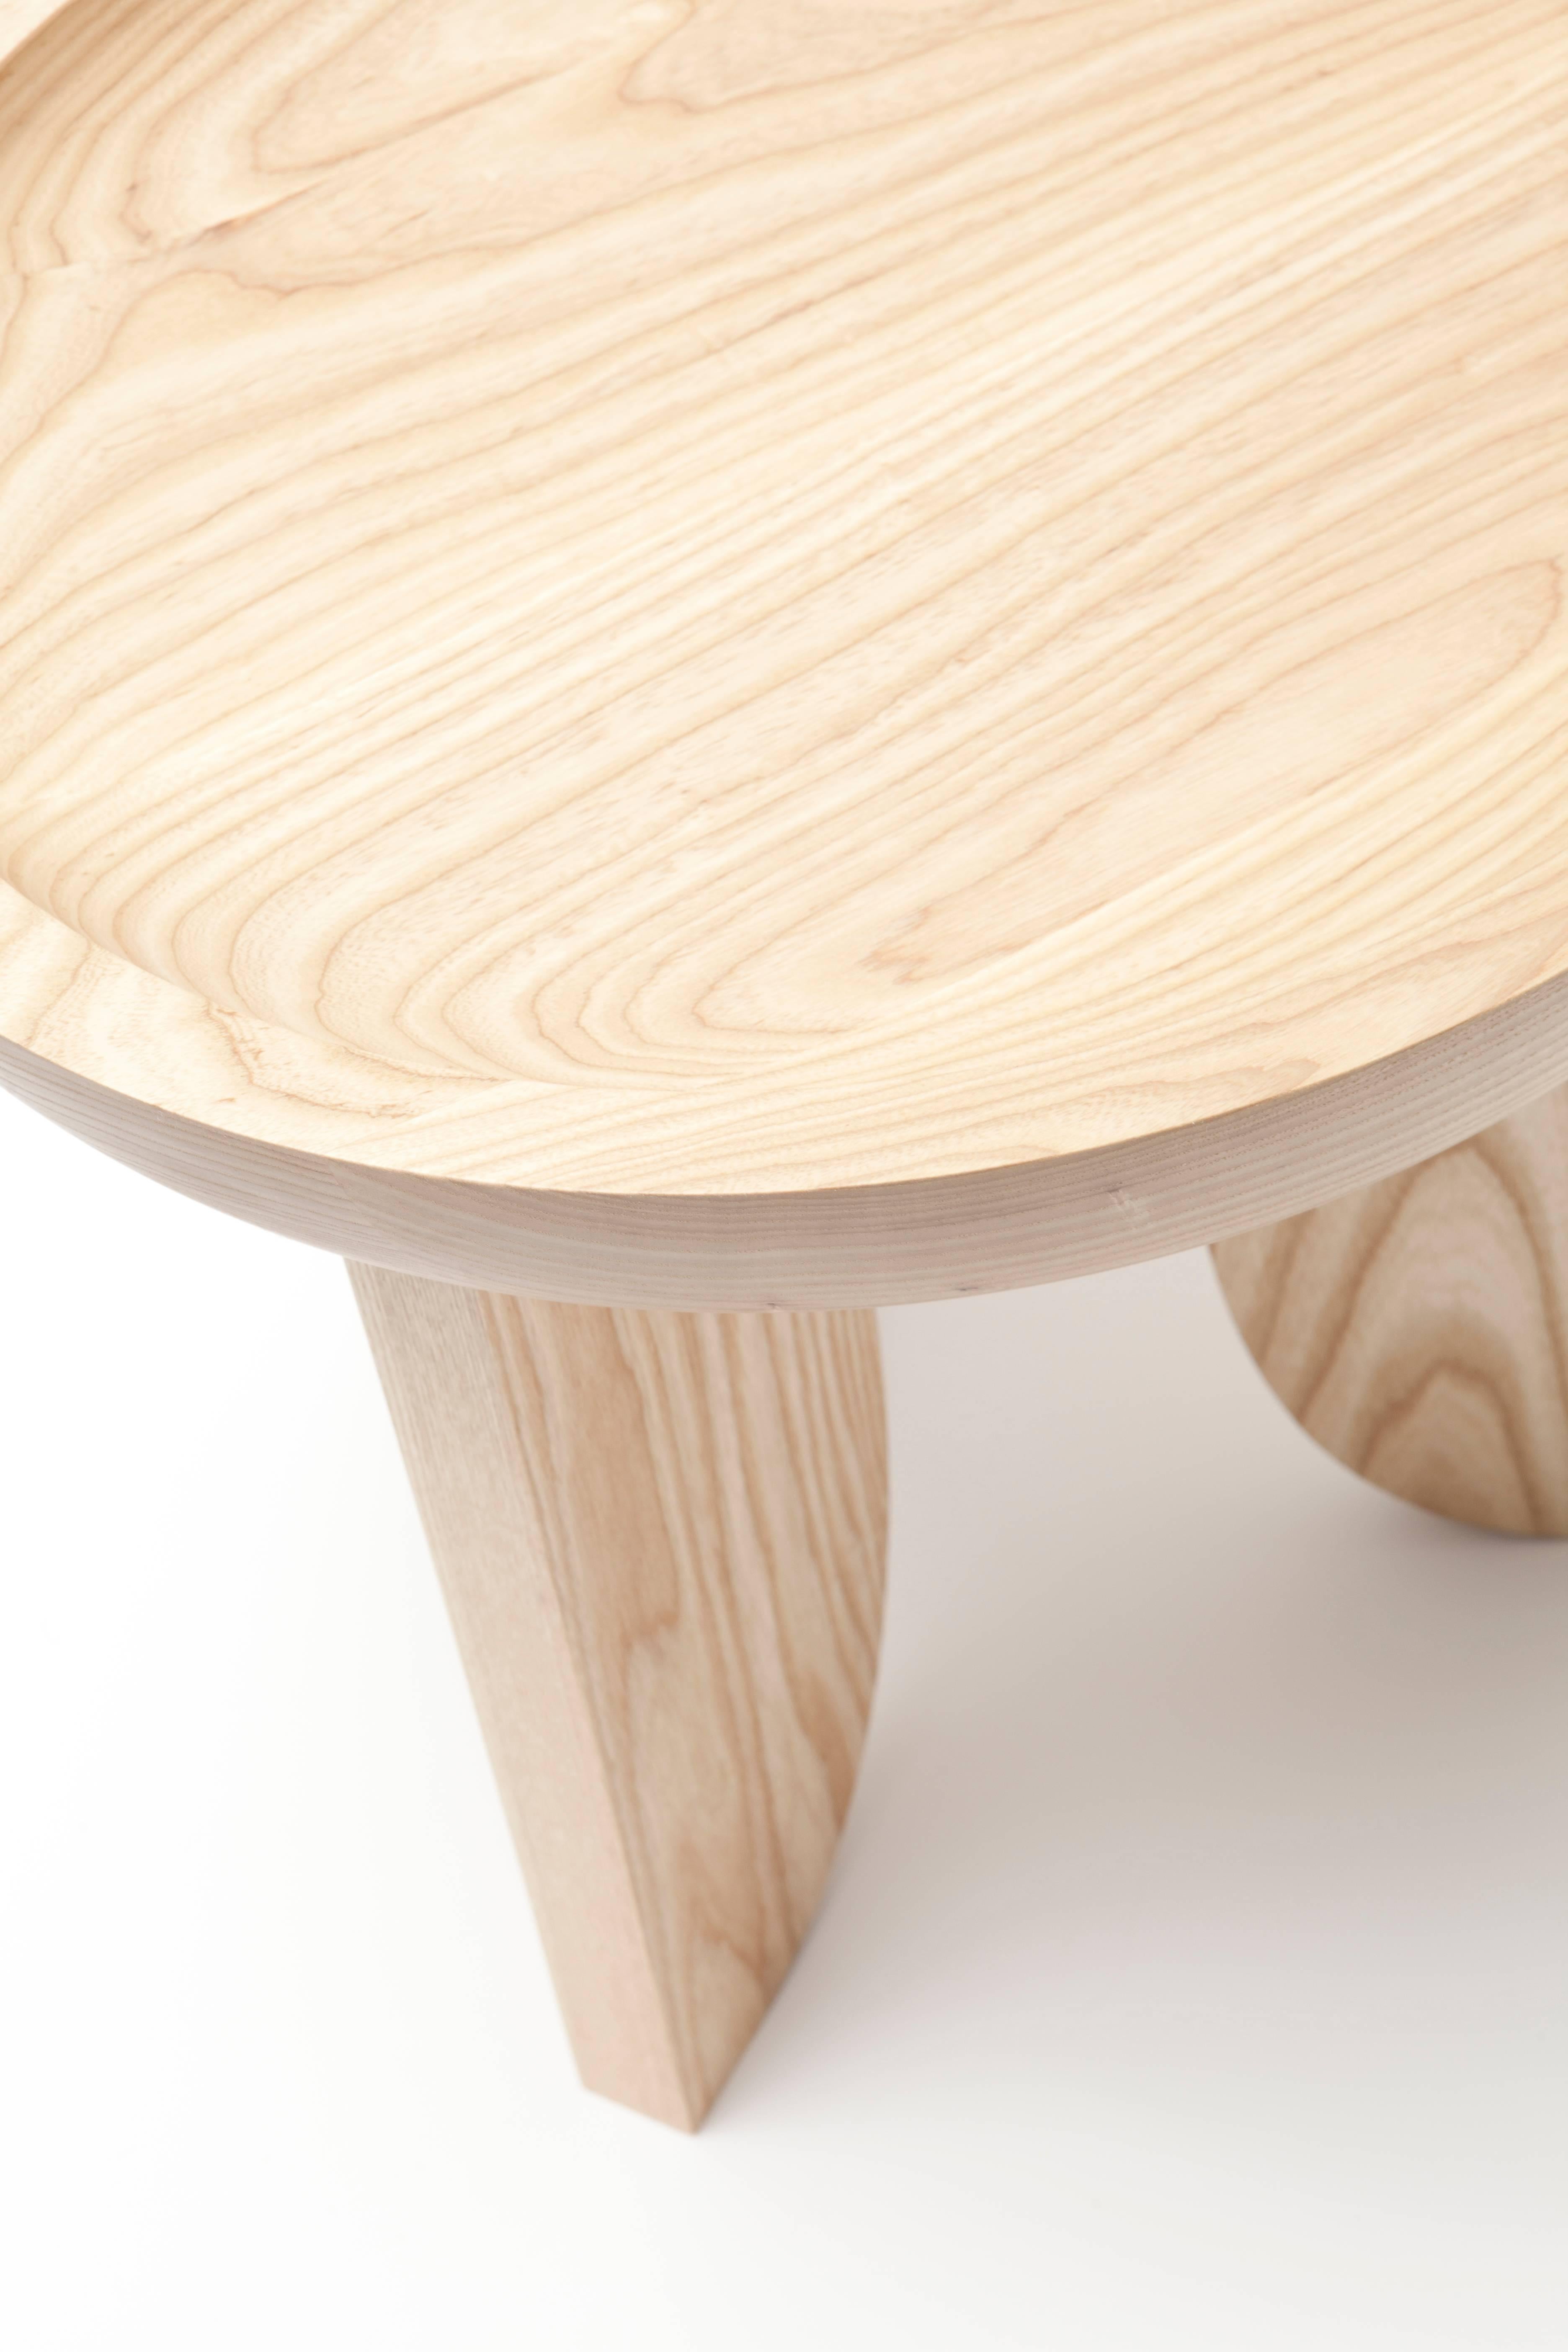 black wood stool side table